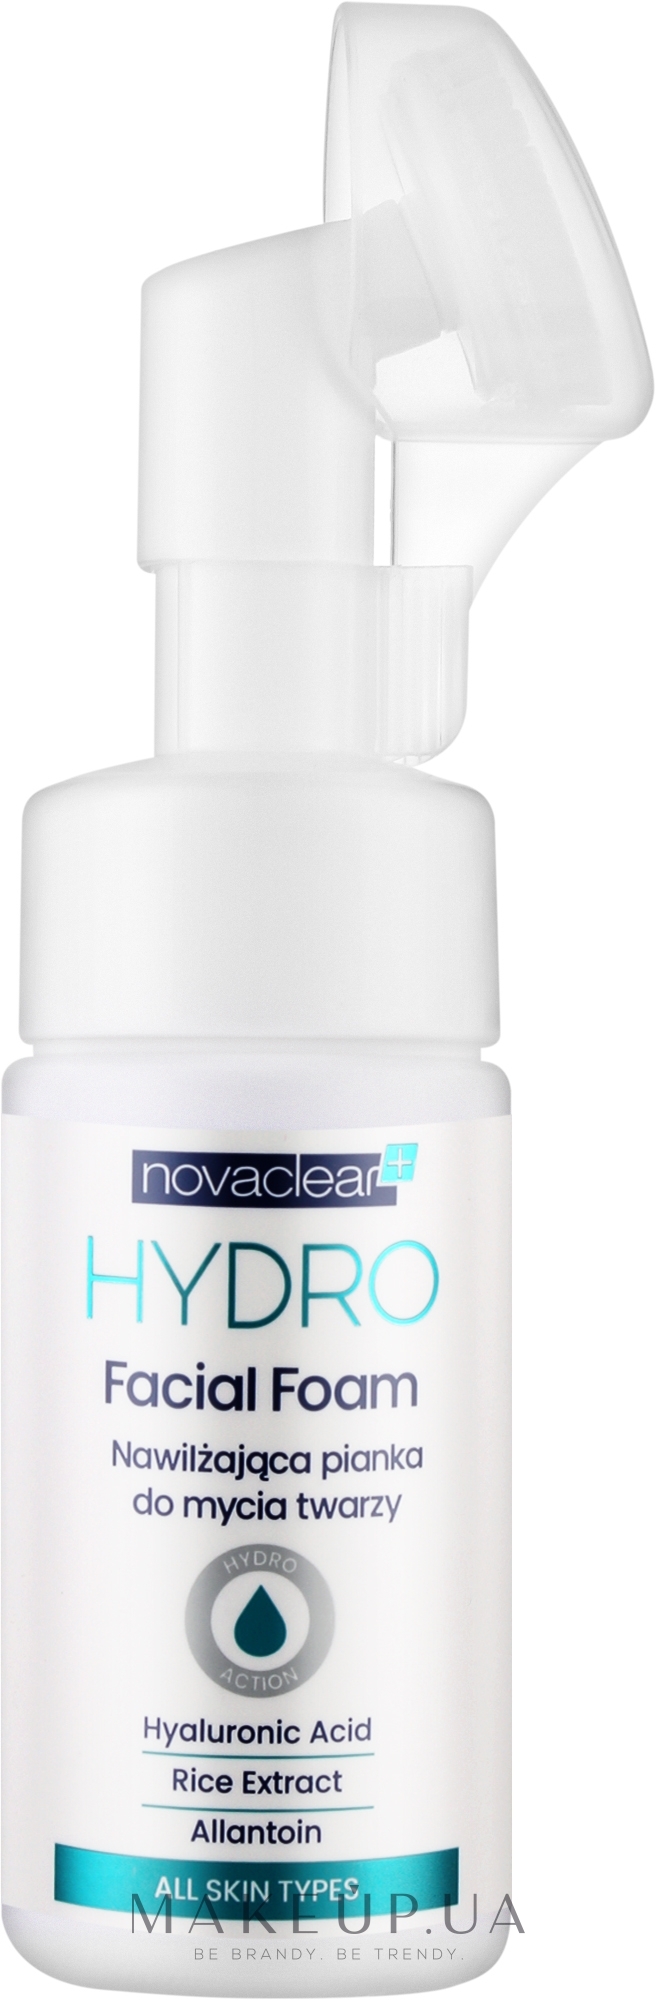 Зволожувальна очищальна піна для обличчя - Novaclear Hydro Facial Foam — фото 100ml